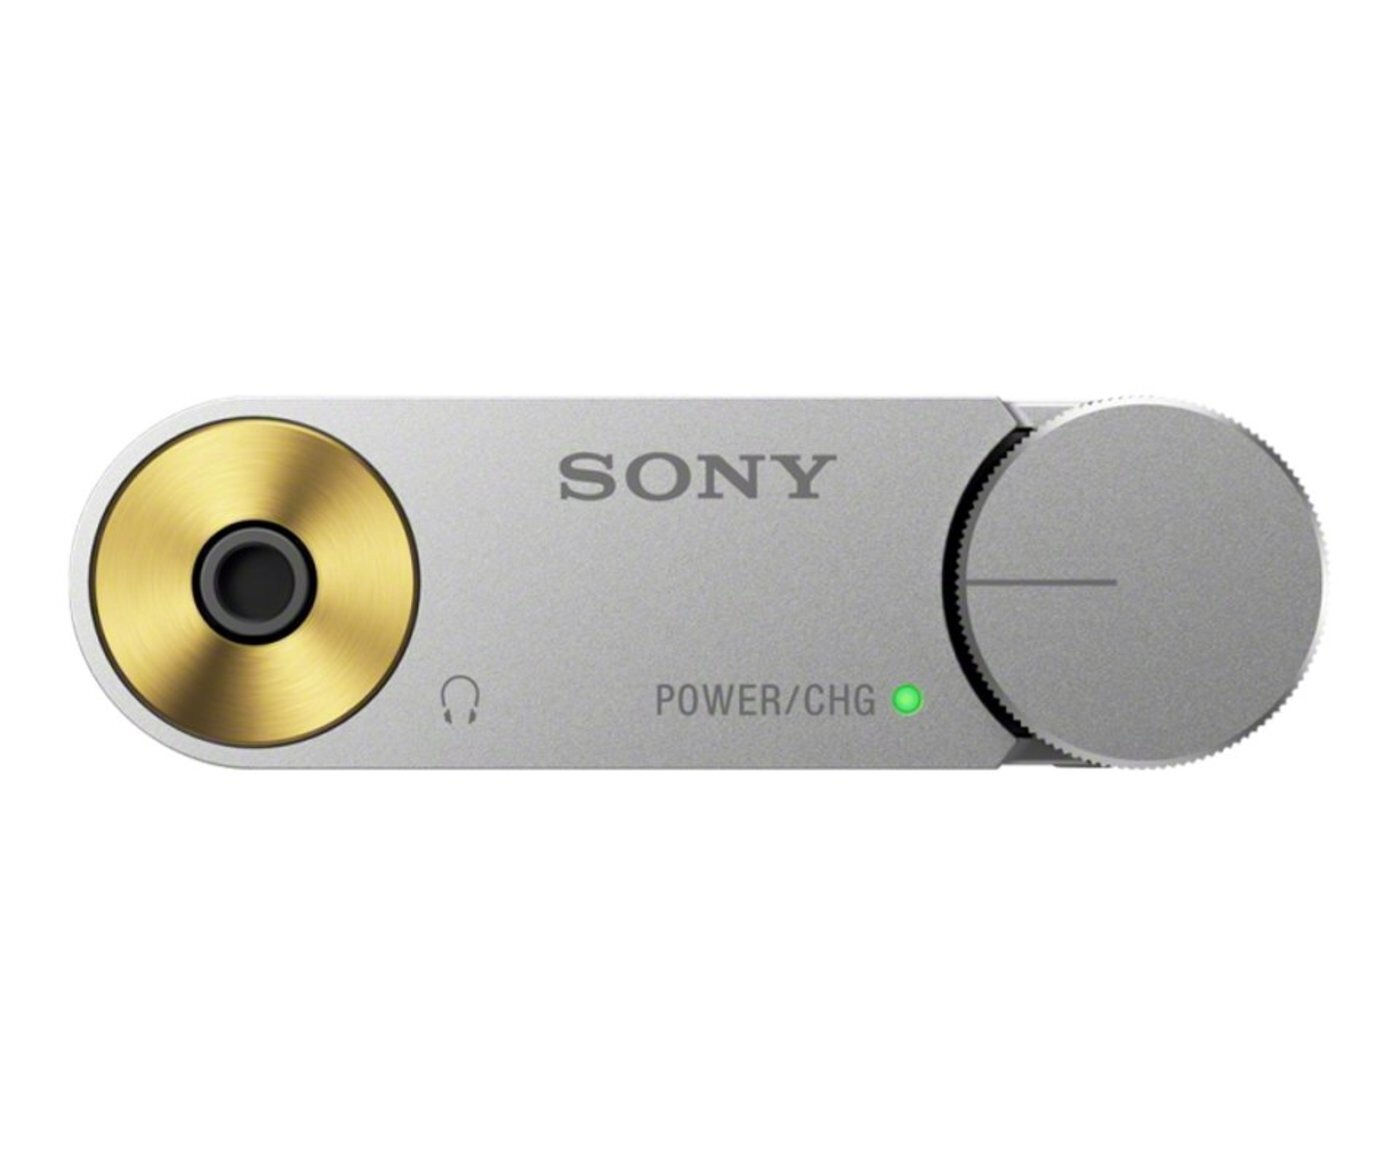 Buy Sony USB DAC Headphone Amplifier - PHA-1A online in Pakistan - Tejar.pk